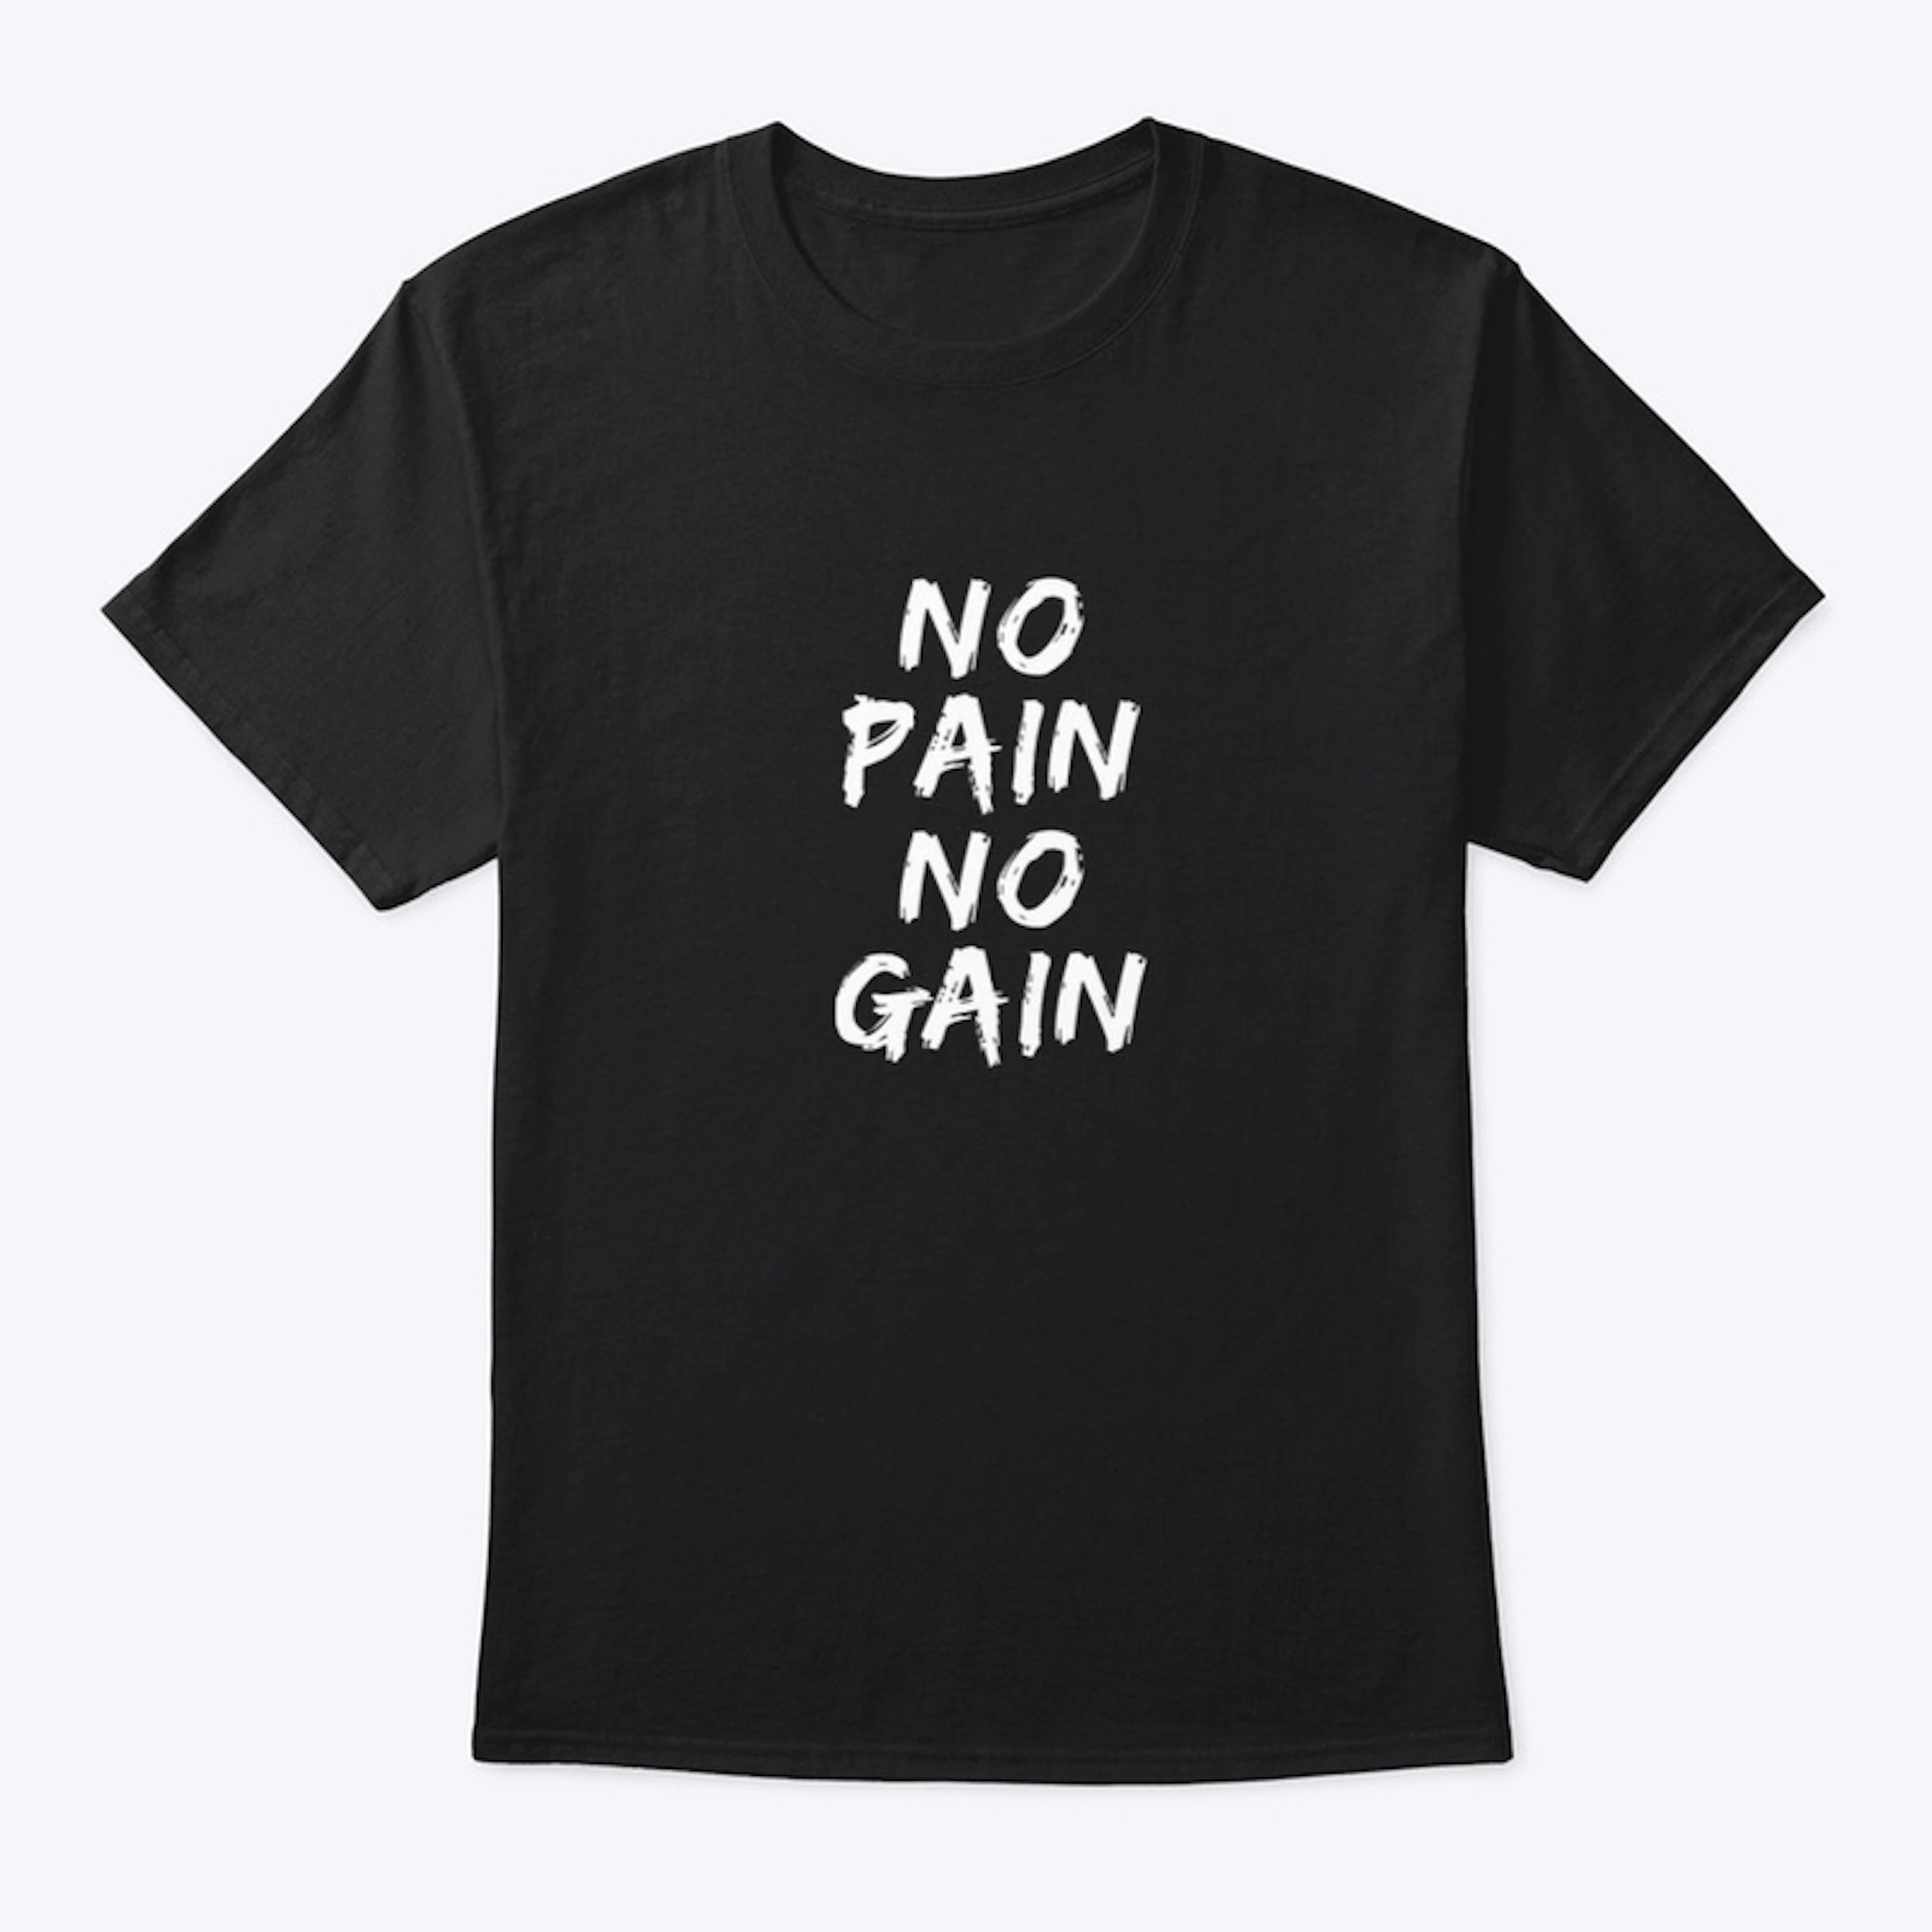 No Pain. No Gain.